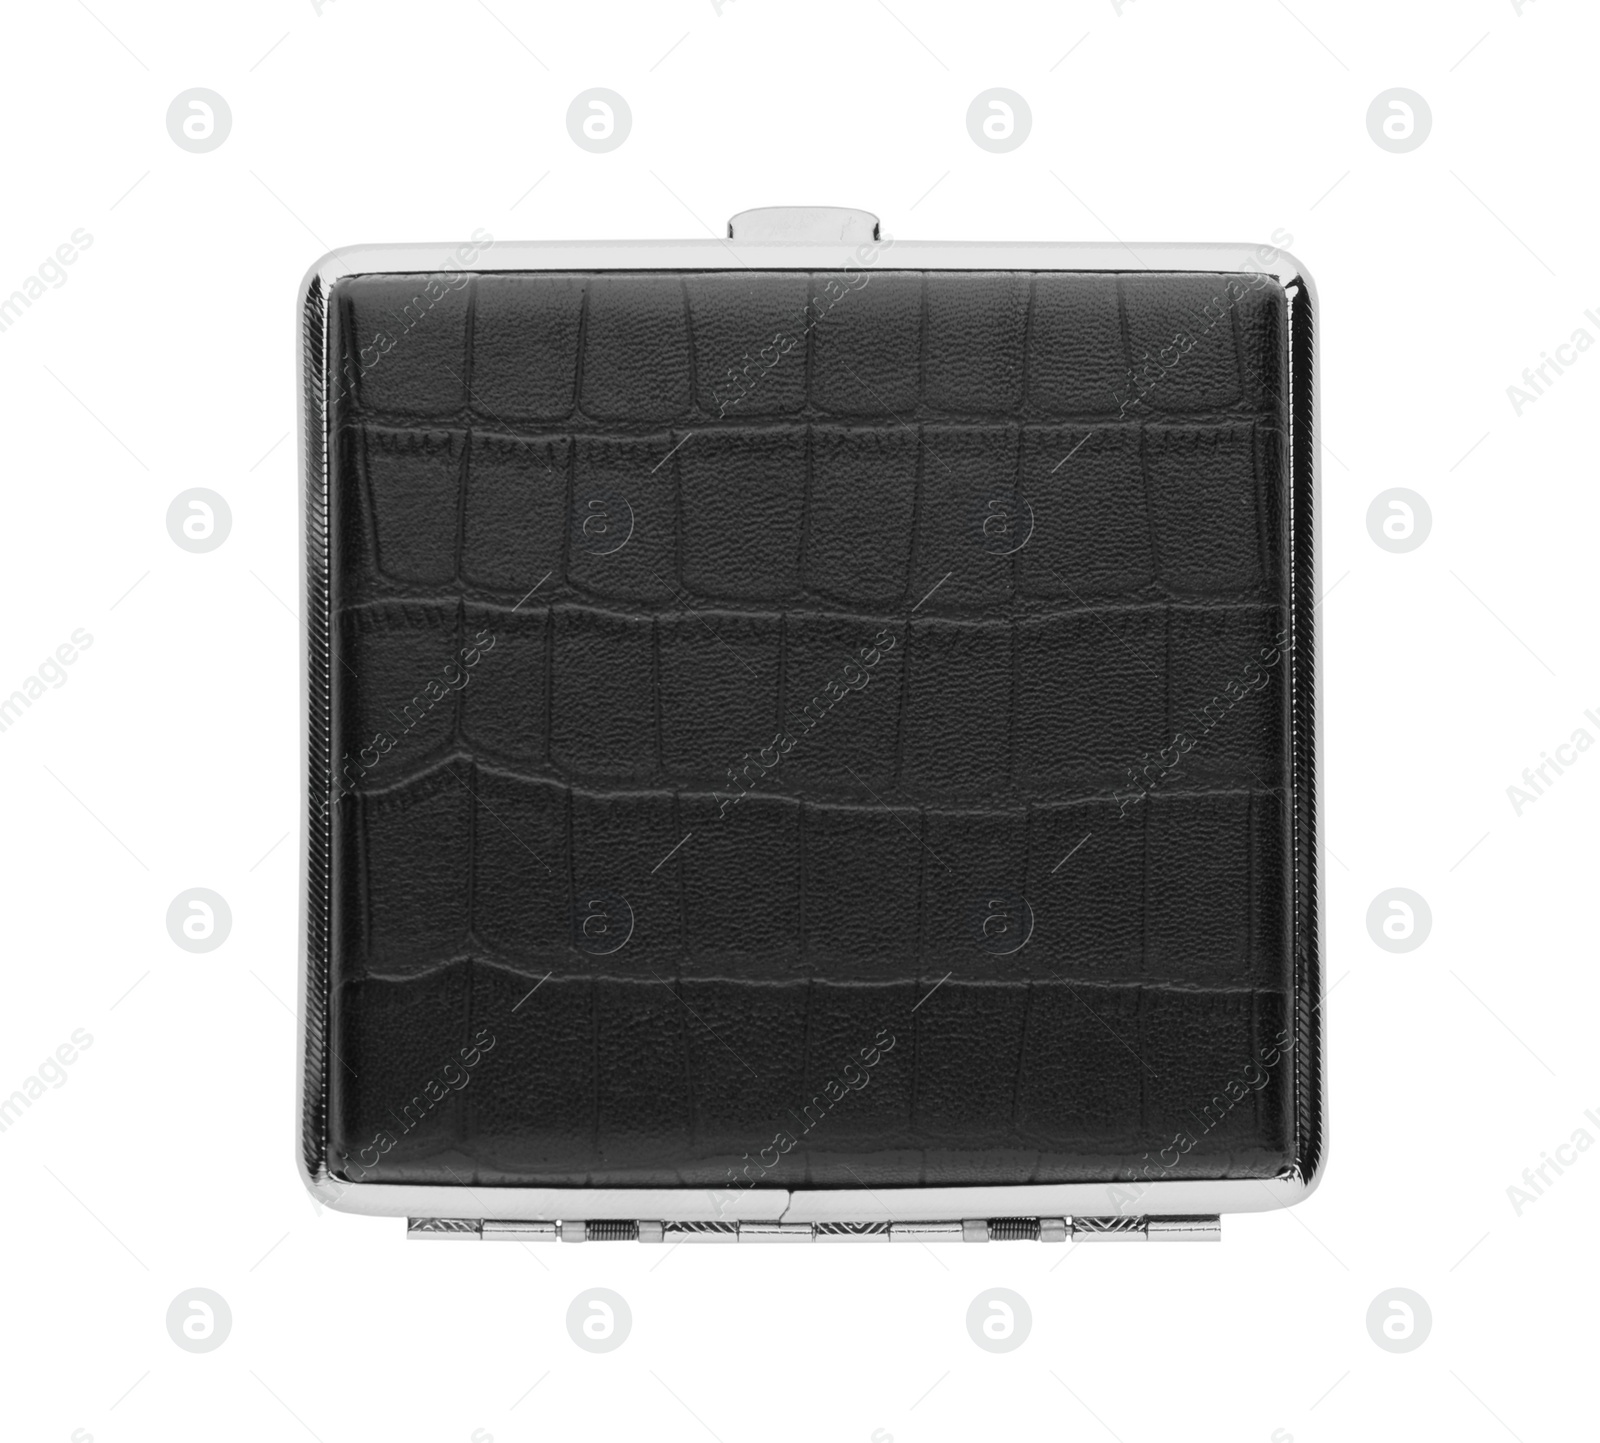 Photo of Stylish leather cigarette case isolated on white